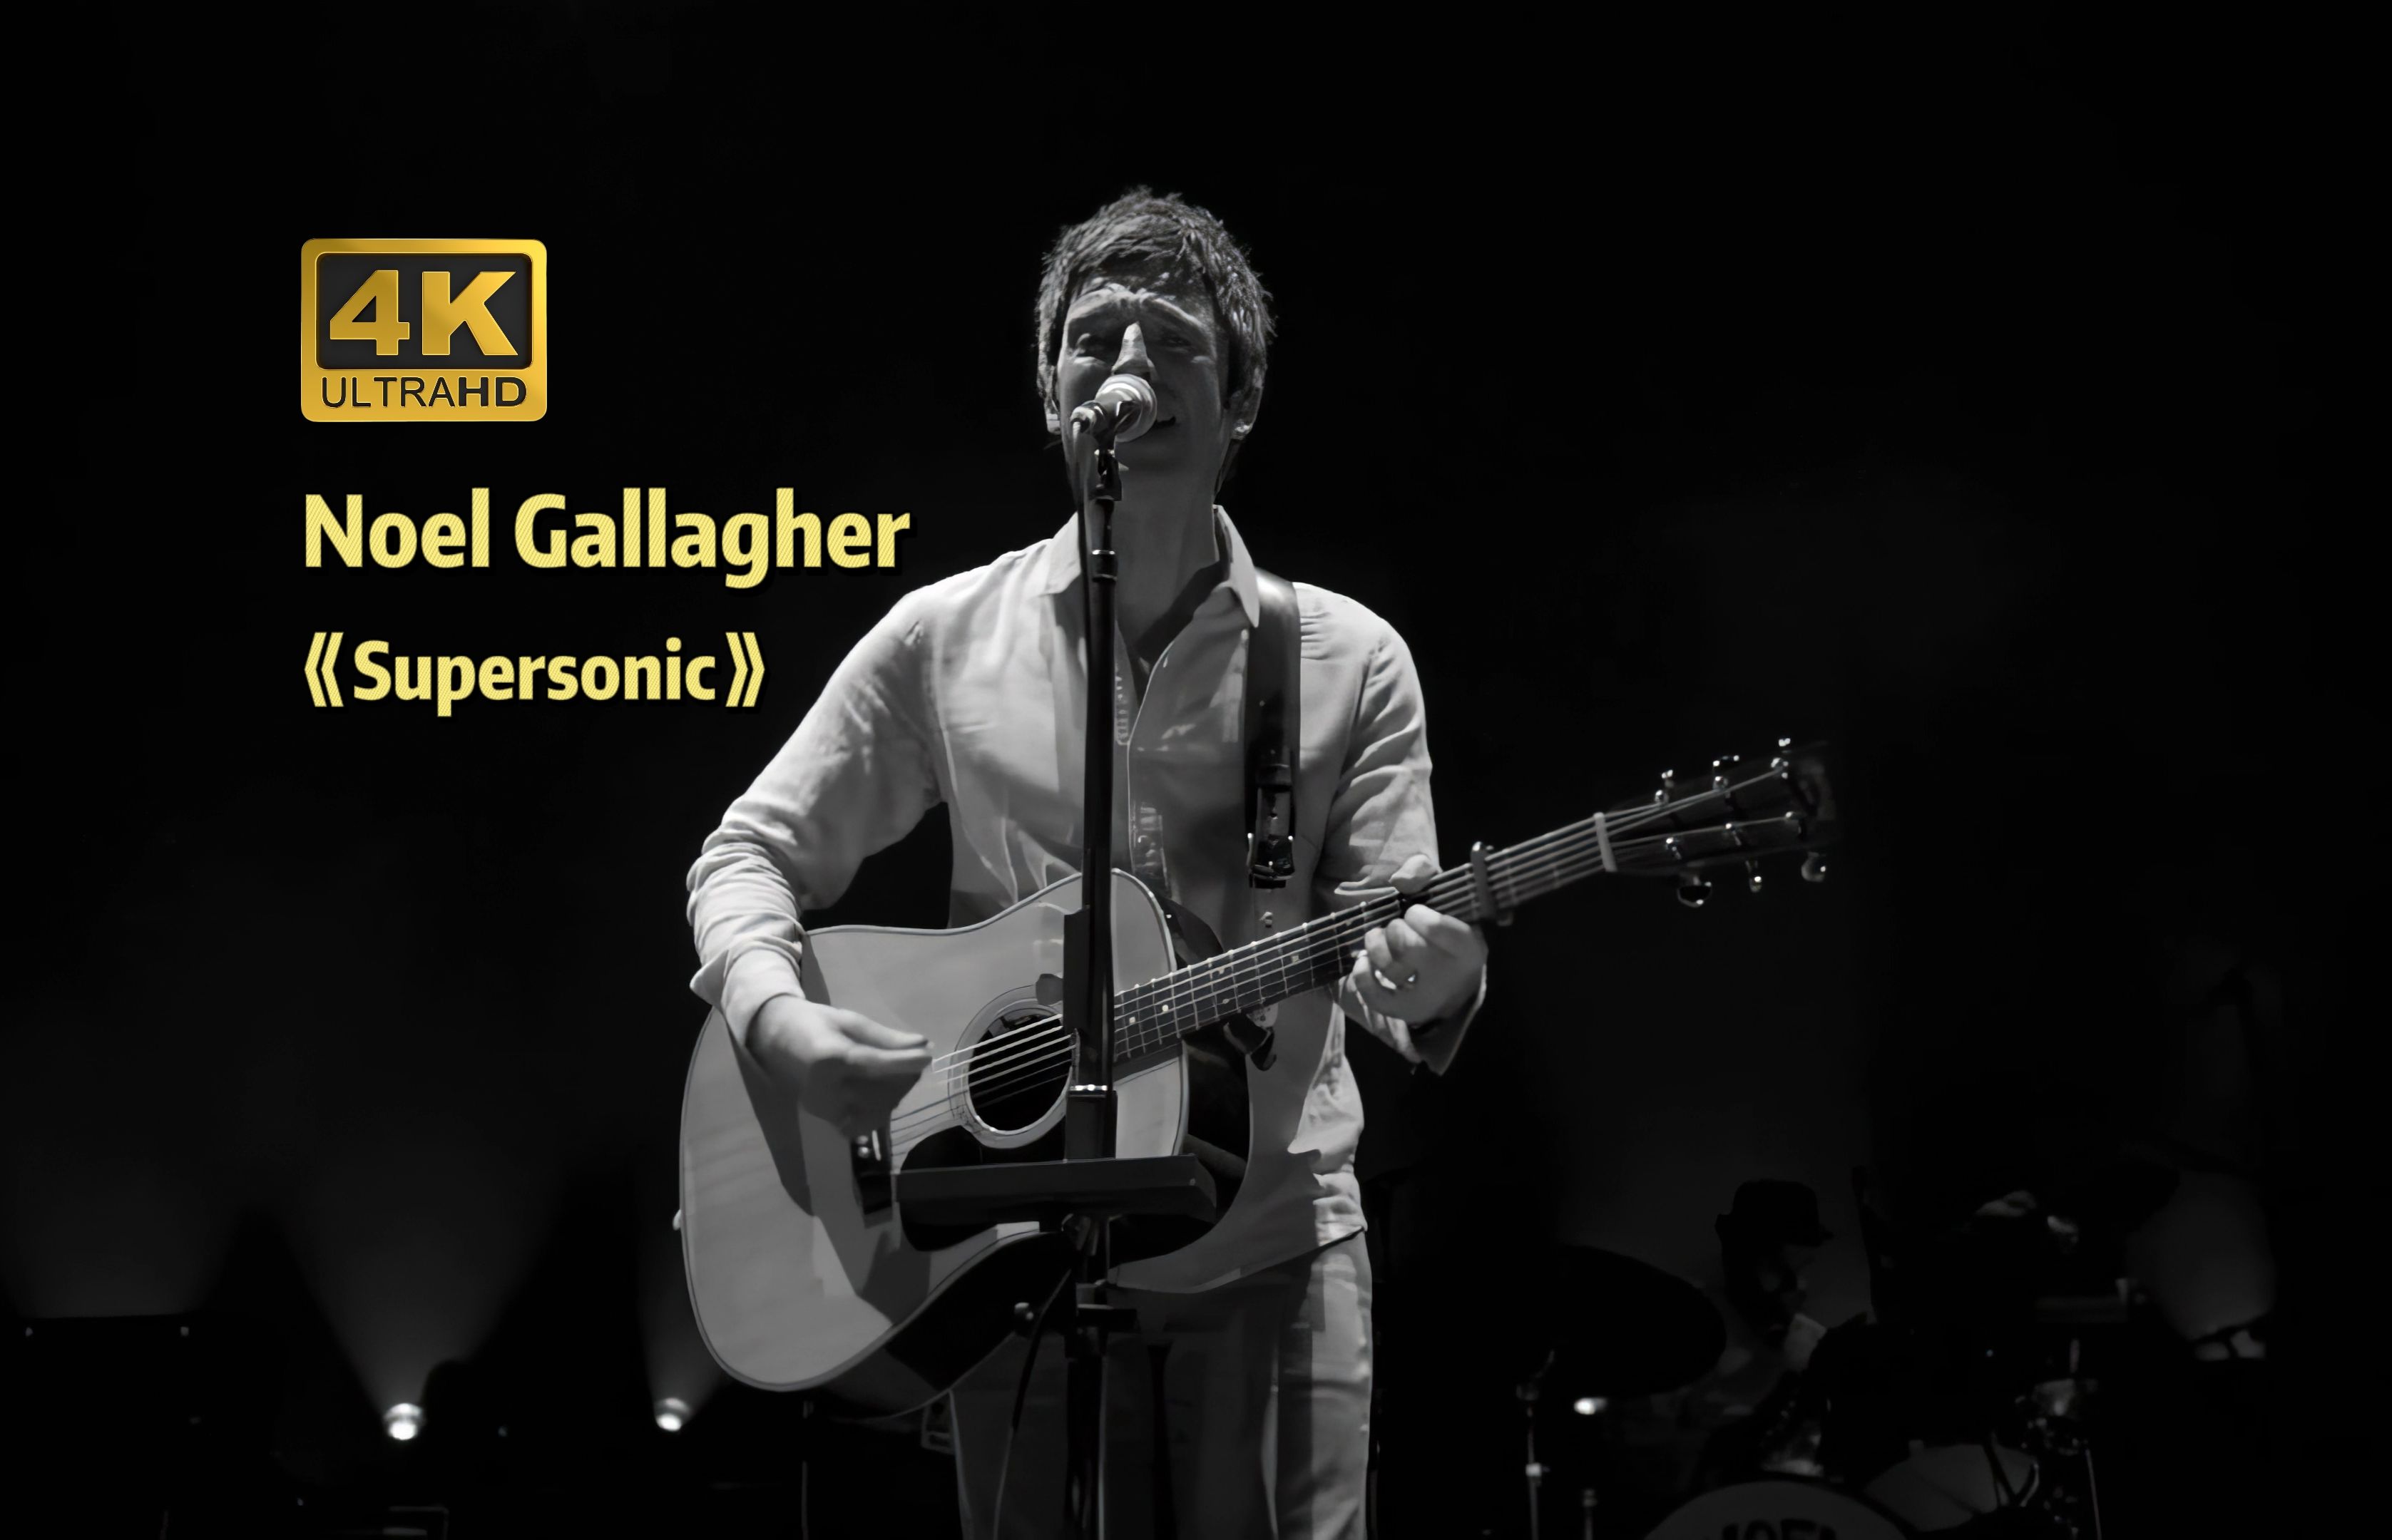 【4K60帧】Noel Gallagher独唱版《Supersonic》Live于2012伦敦O2